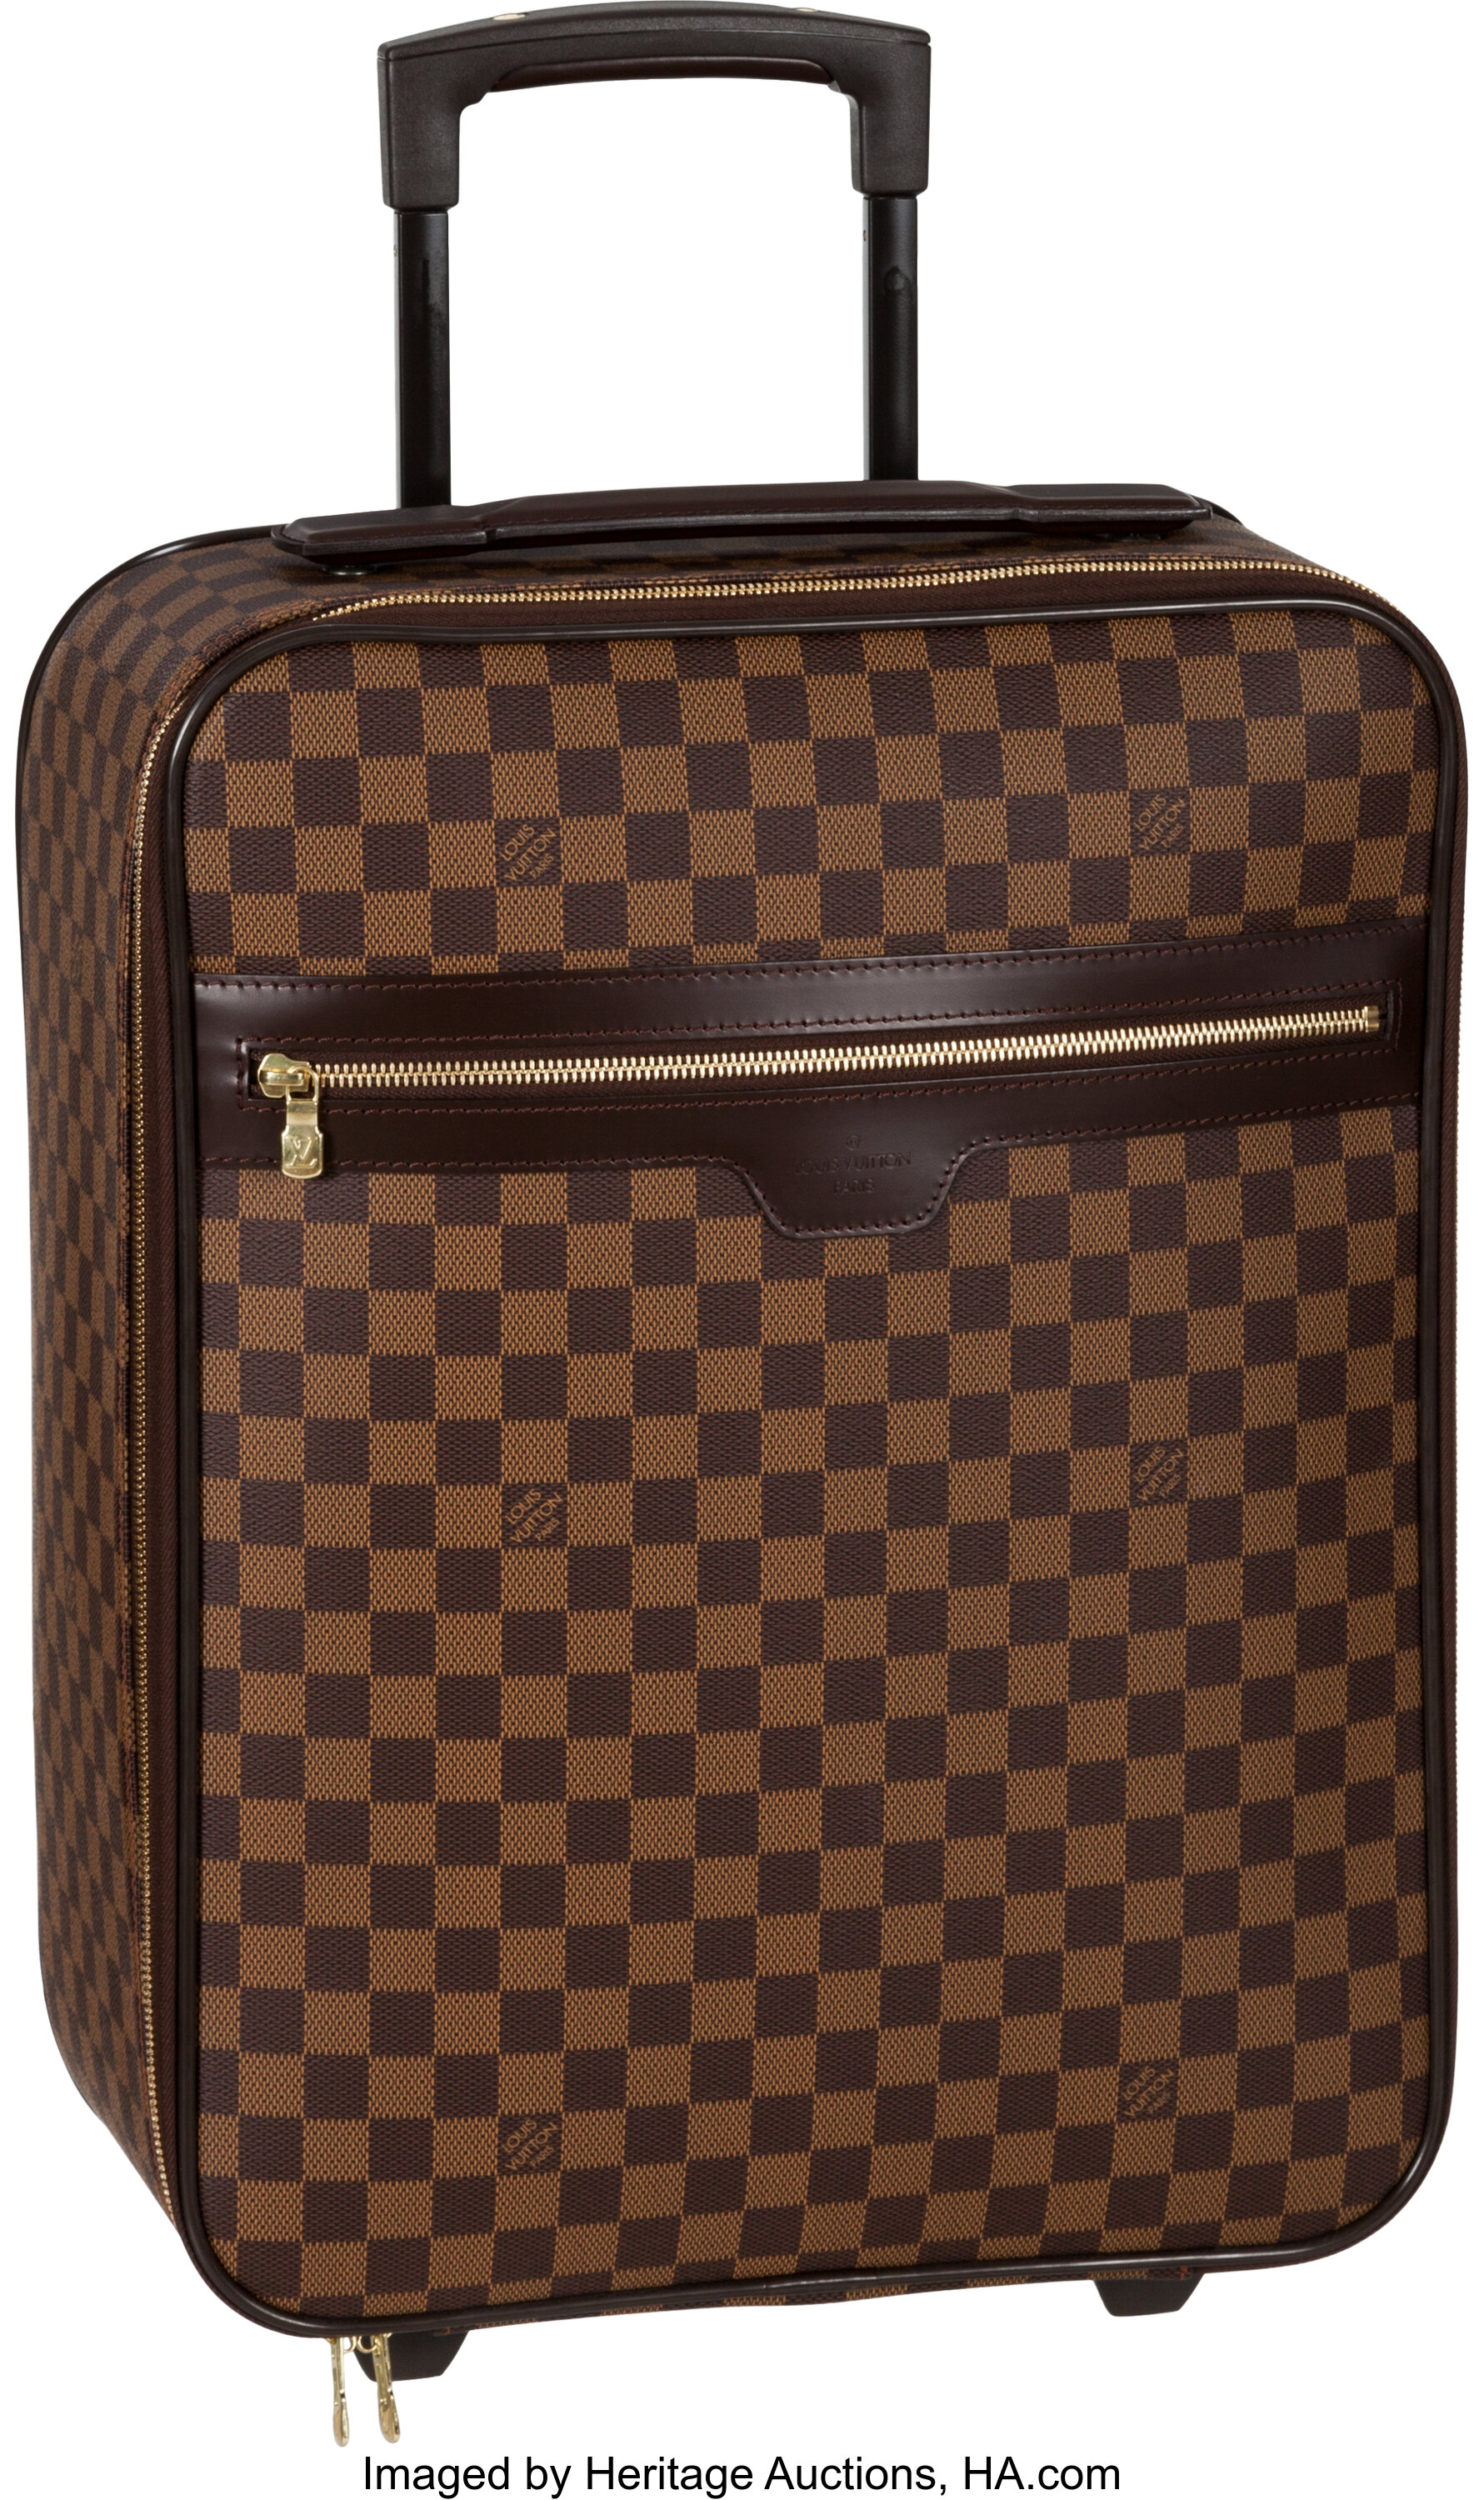 Louis Vuitton Damier Ebene Canvas Pegase 50 Suitcase. Excellent